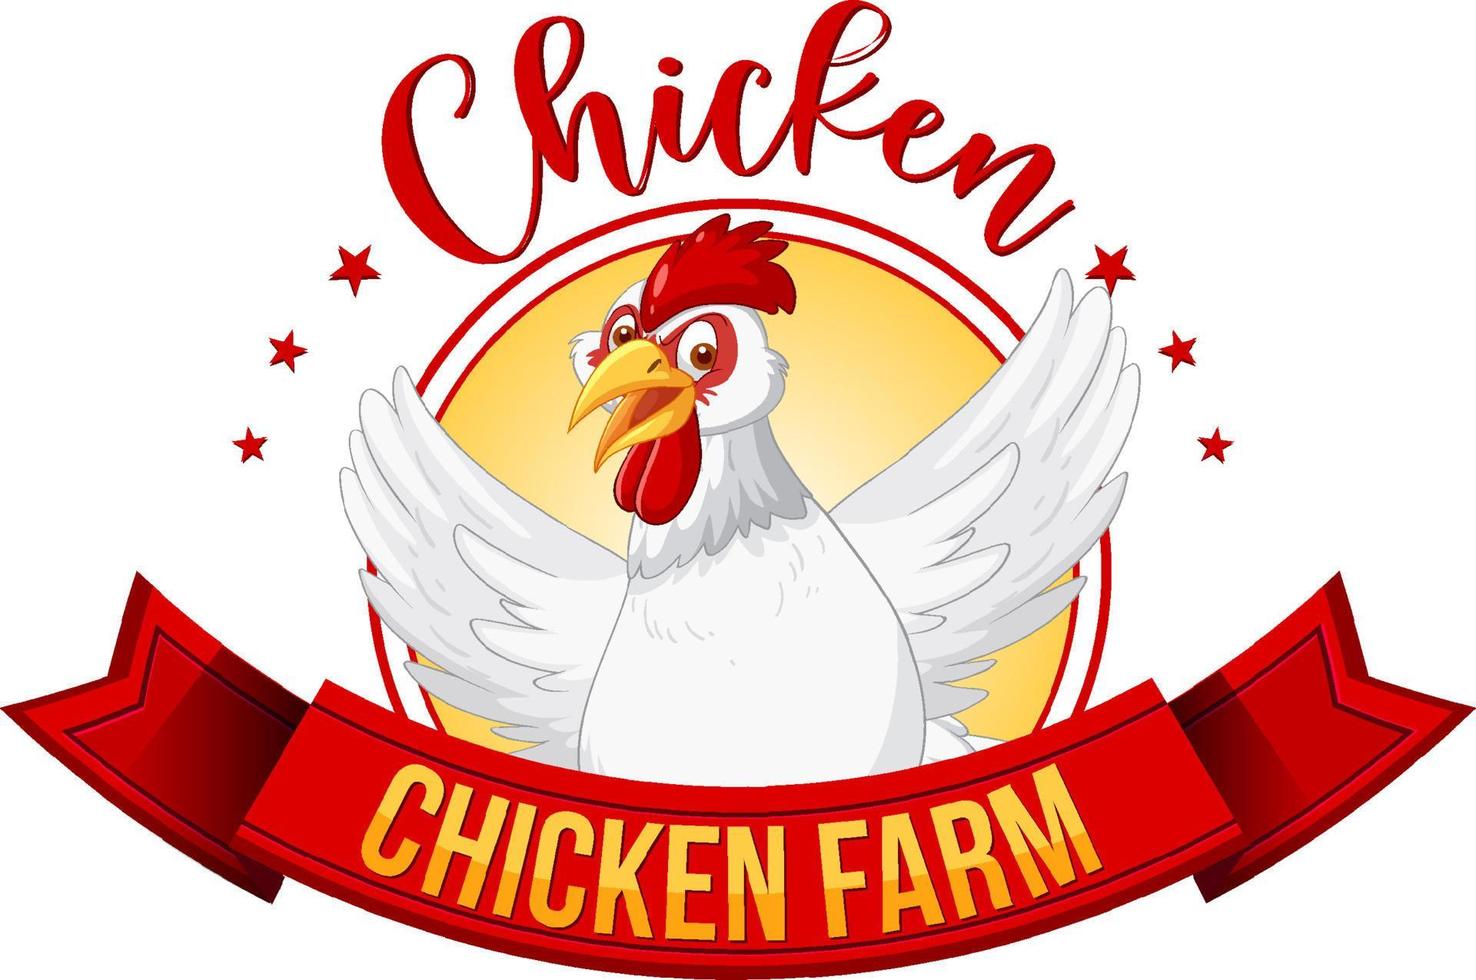 bannière de ferme de poulet avec personnage de dessin animé de poulet blanc vecteur